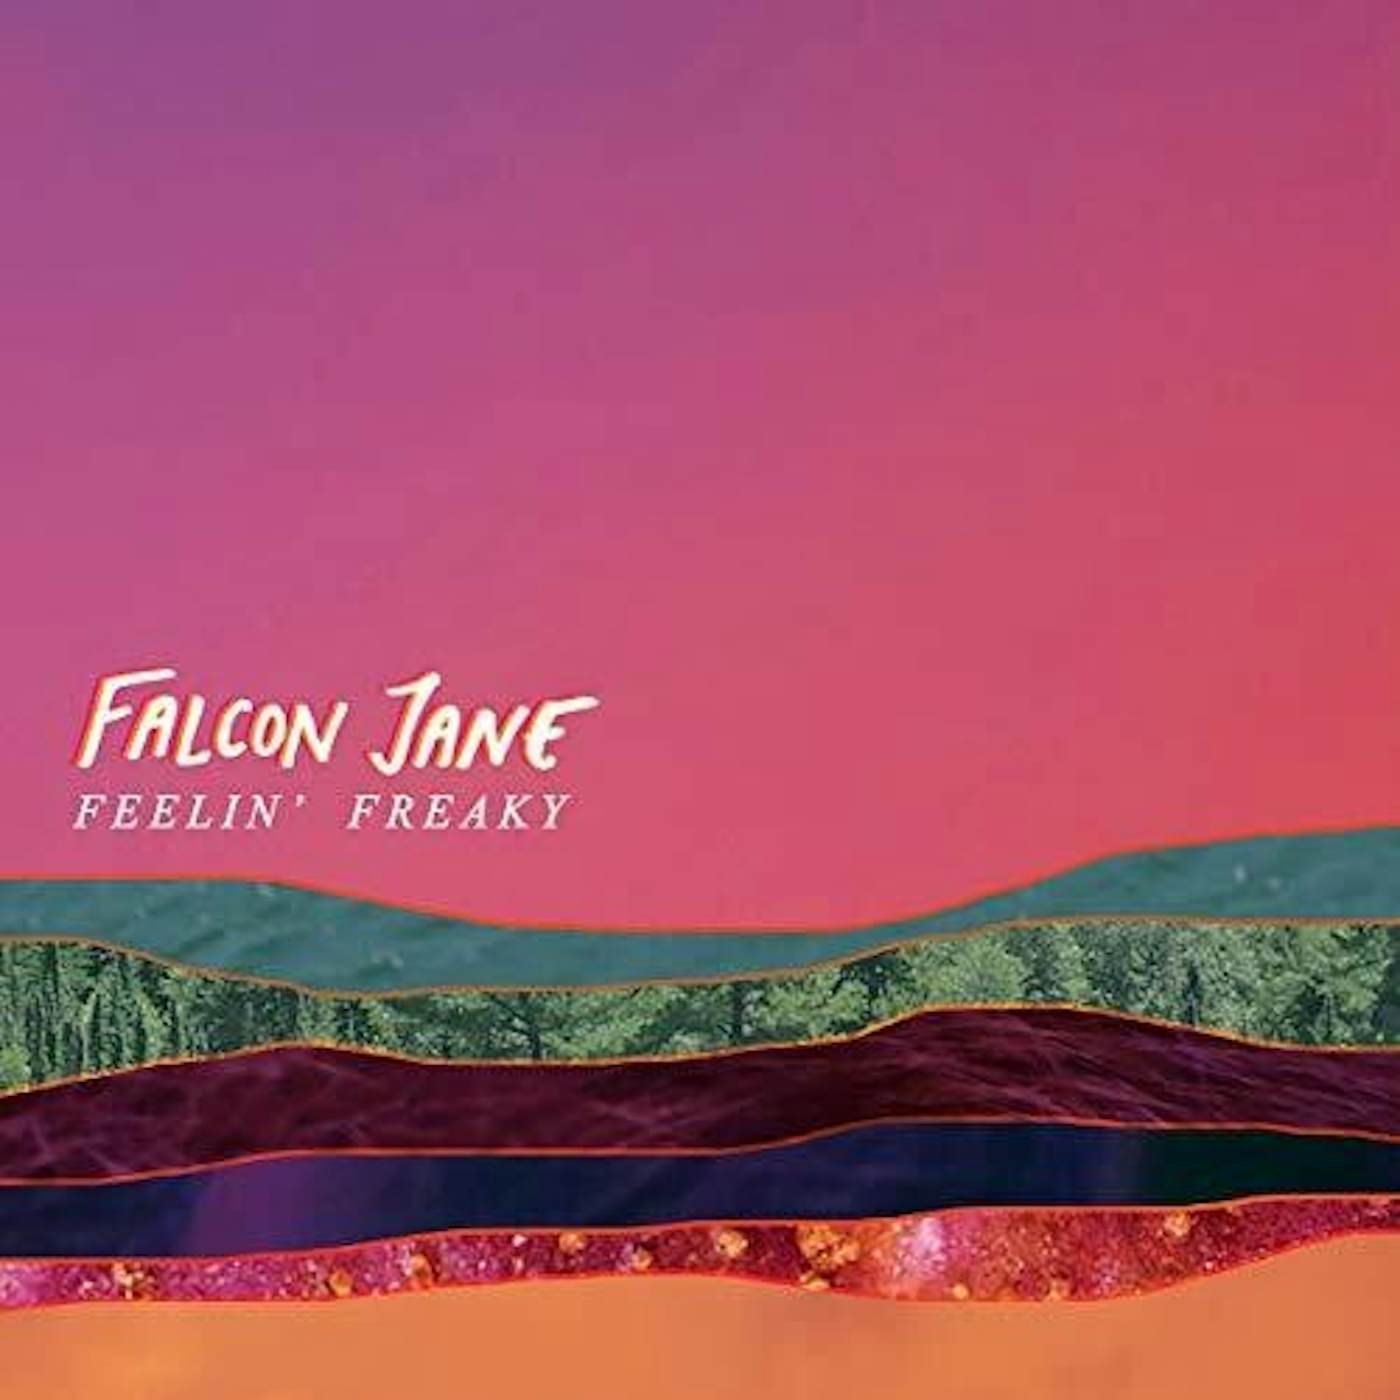 Falcon Jane FEELIN' FREAKY CD